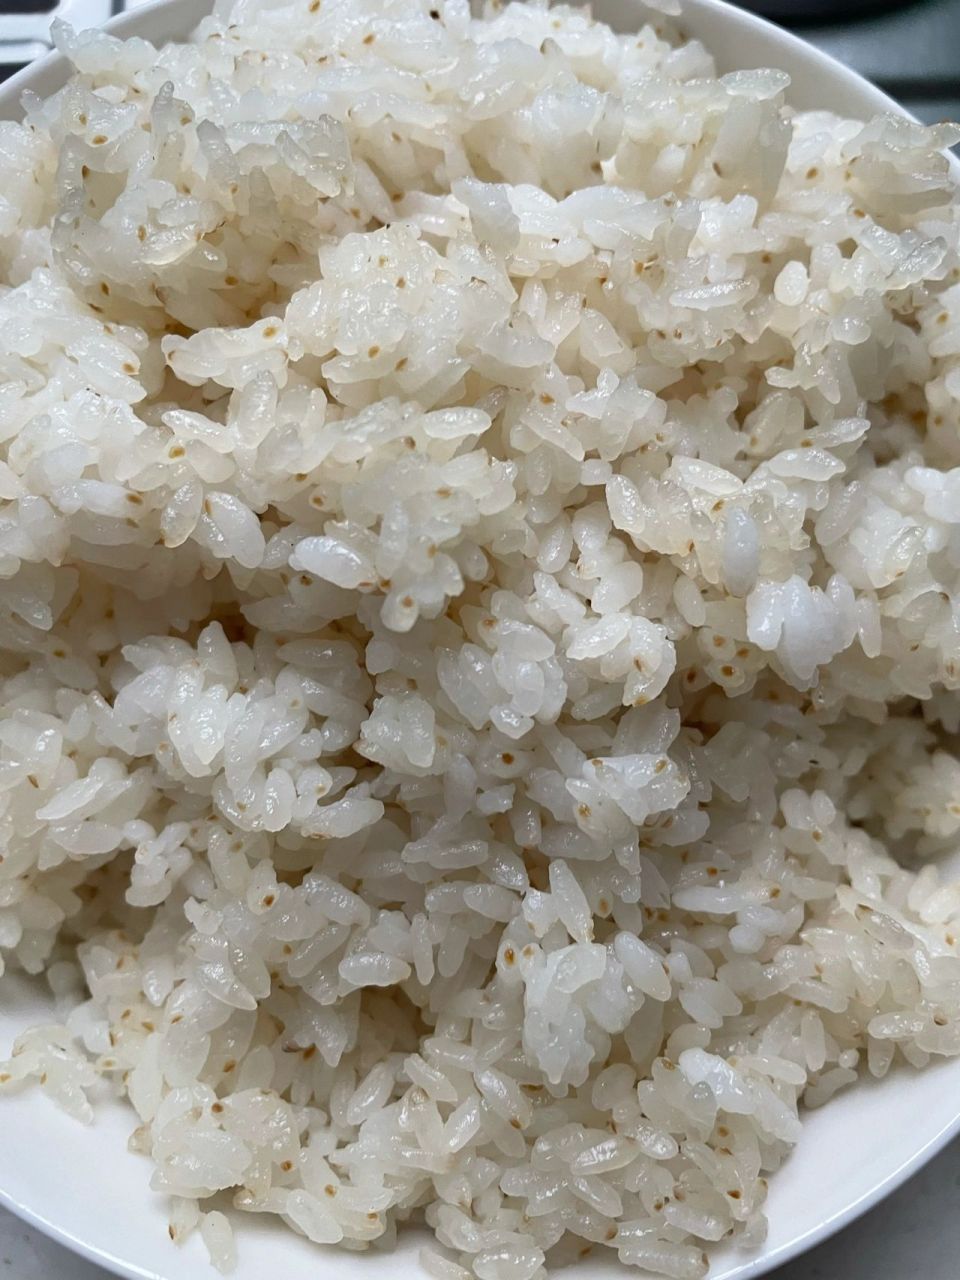 大米会发霉吗? 想问一下大家,这米是发霉了吗?还能吃吗?